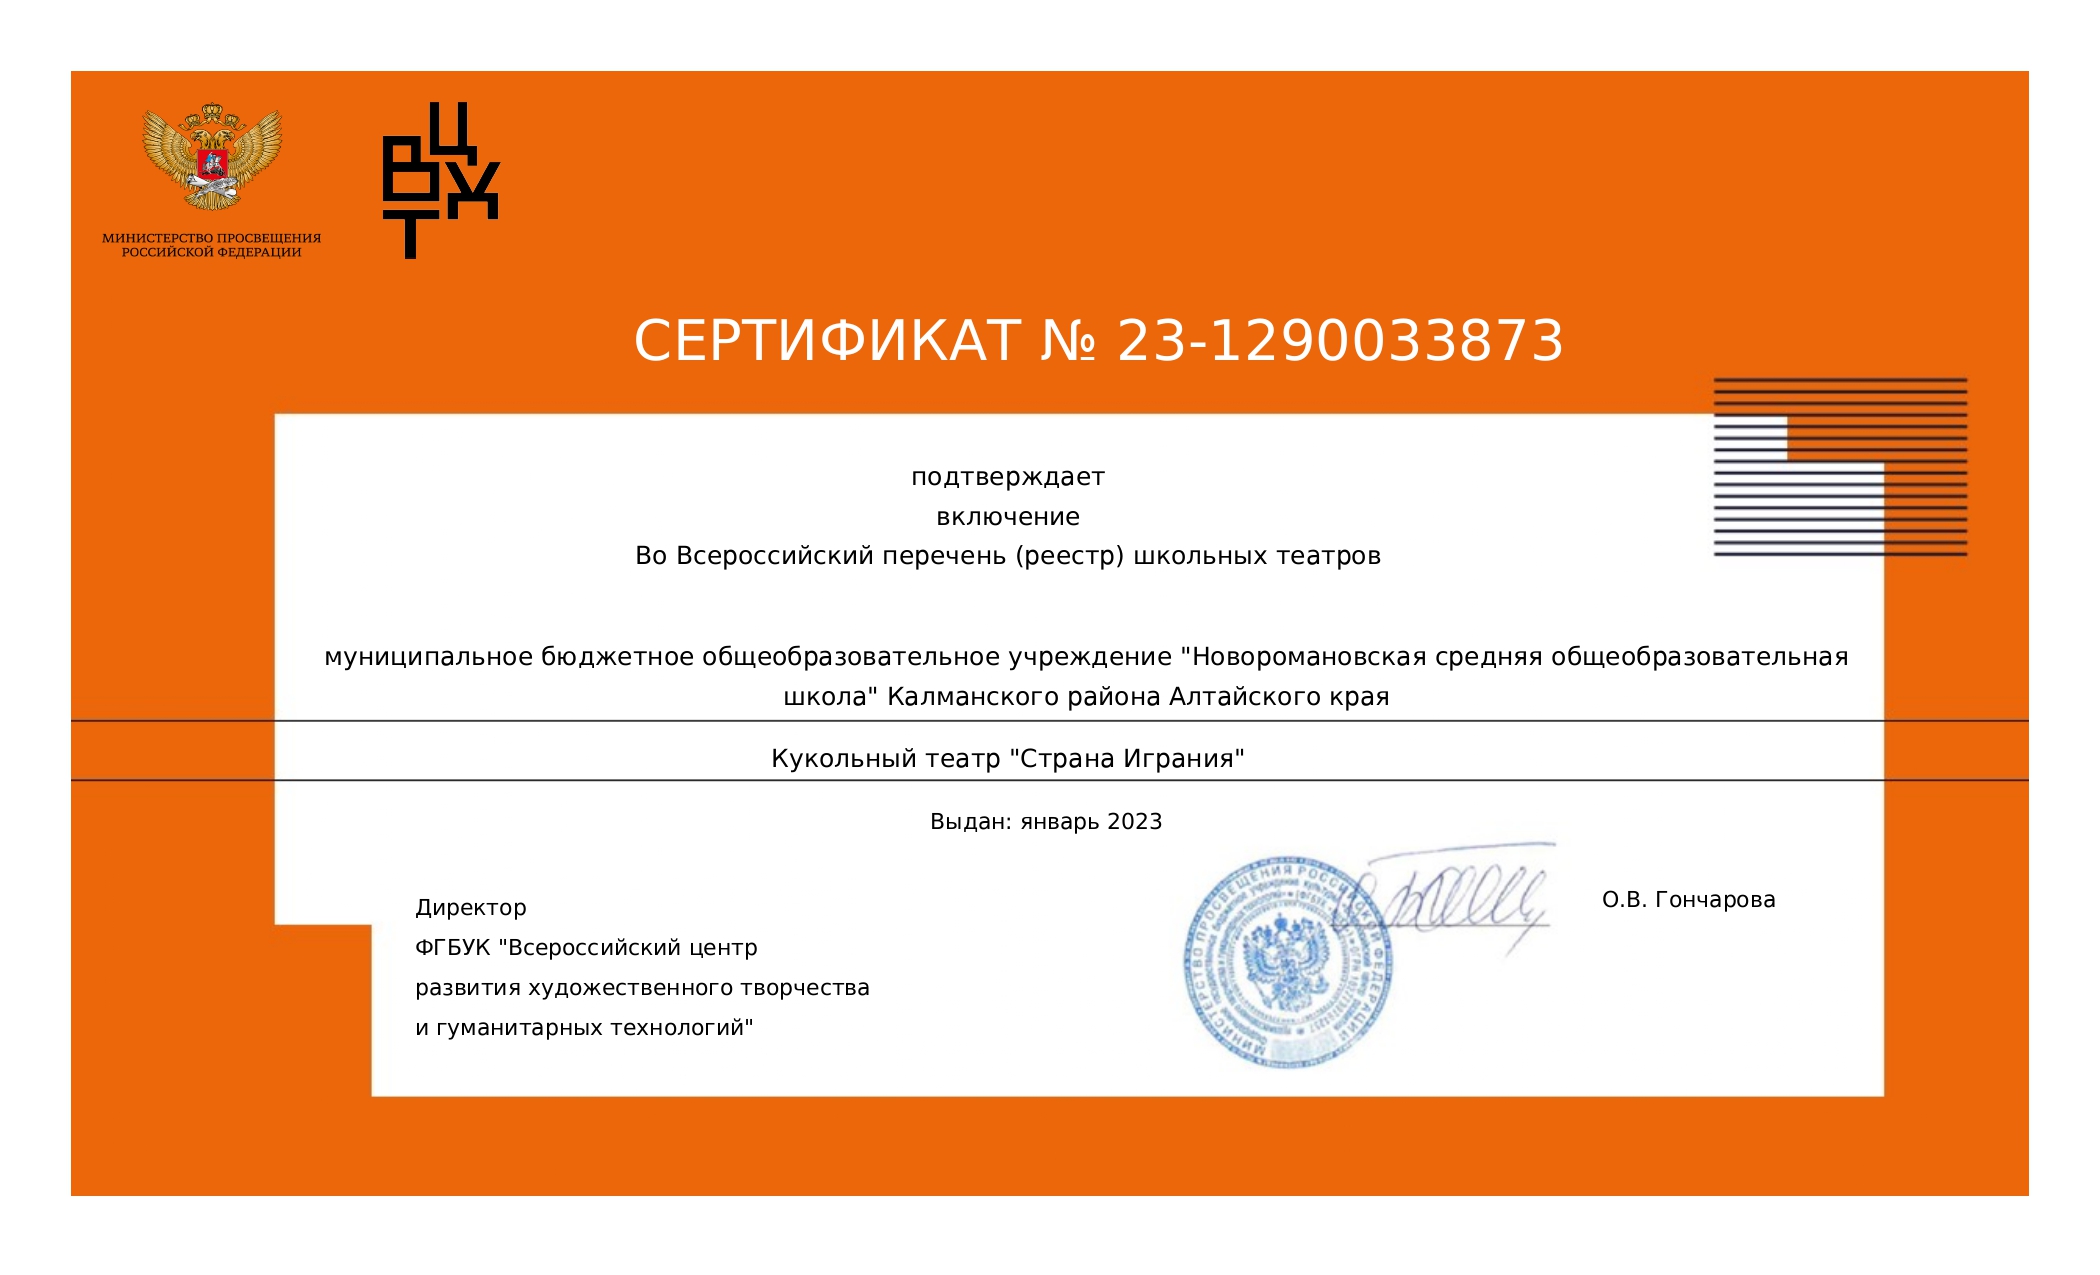 Сертификат о включении в реестр.